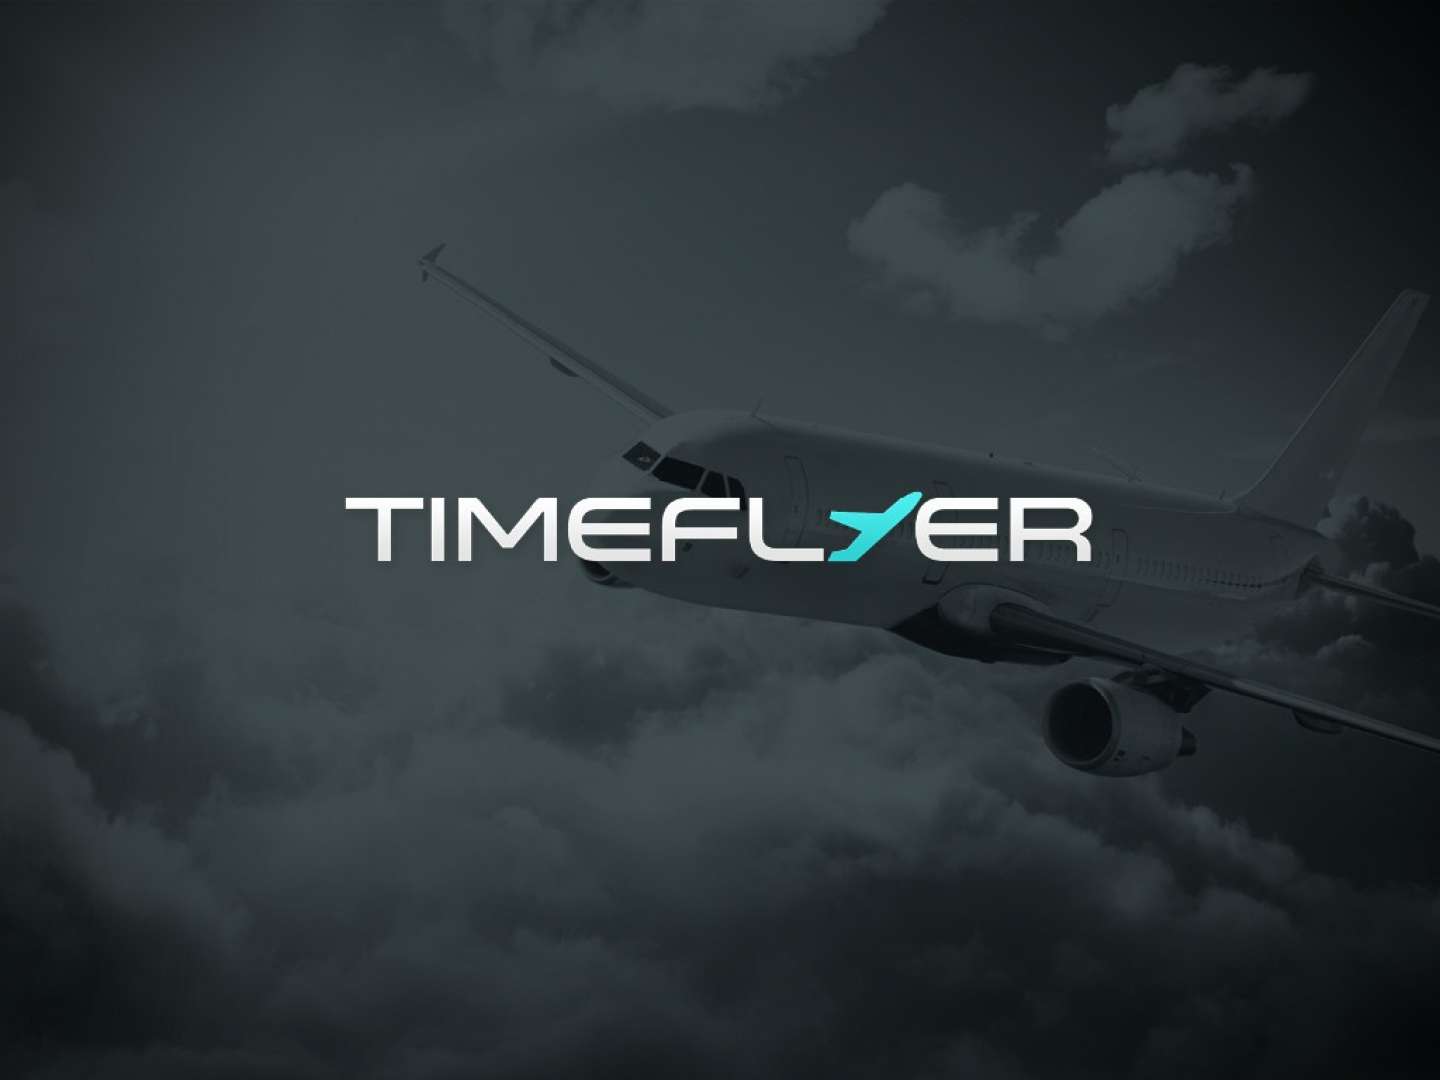 Timeflyer